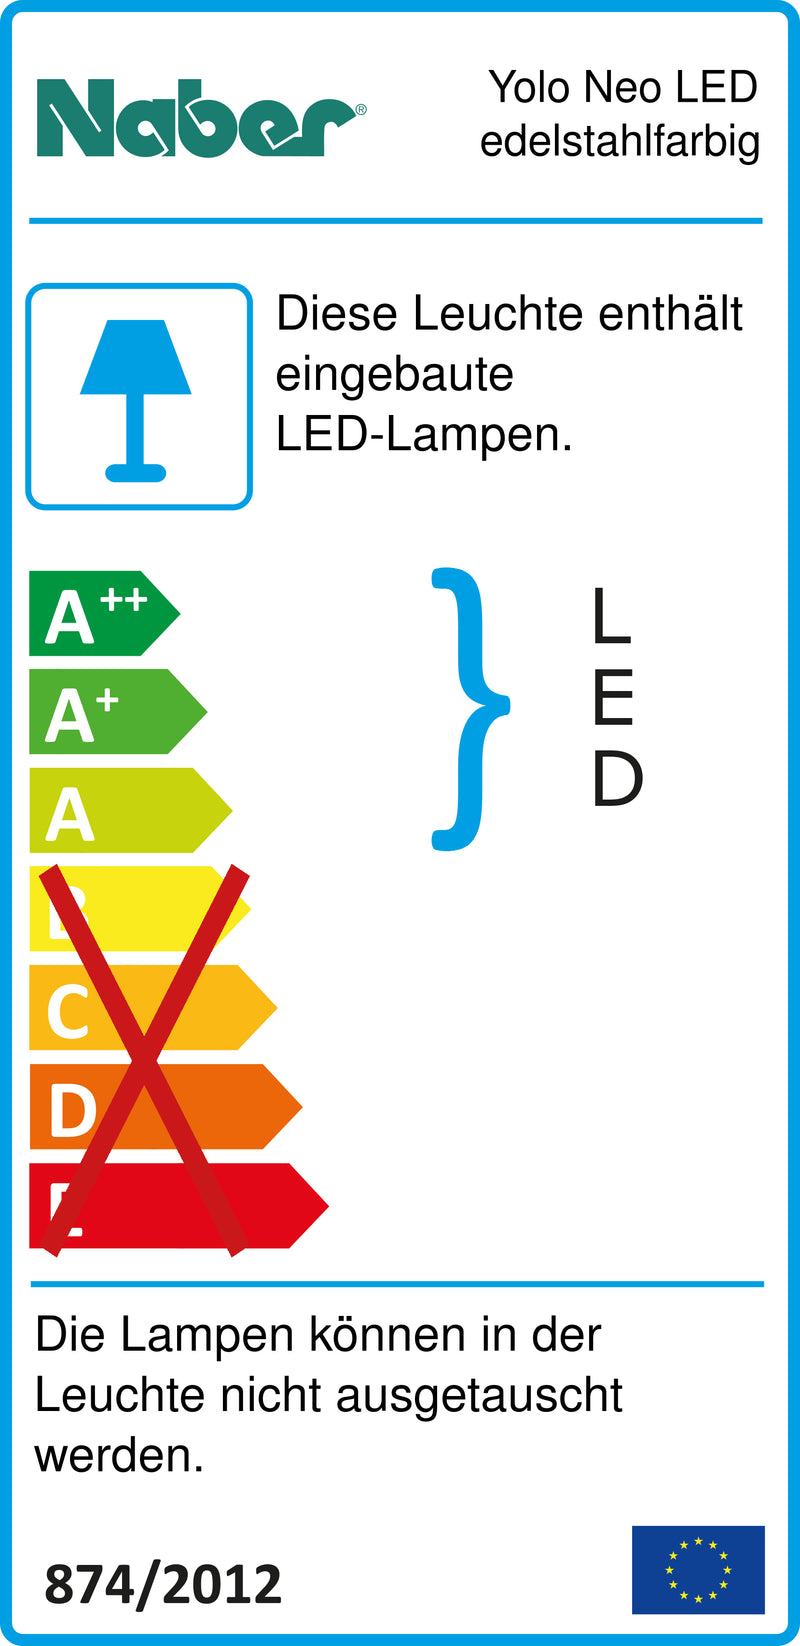 E-Label zu Zeichnung zu Yolo Neo LED edelstahlfarbig als Variante Einzelleuchte o. S., 4000 K neutralweiß von Naber GmbH in der Kategorie Lichttechnik in Österreich auf conceptshop.at